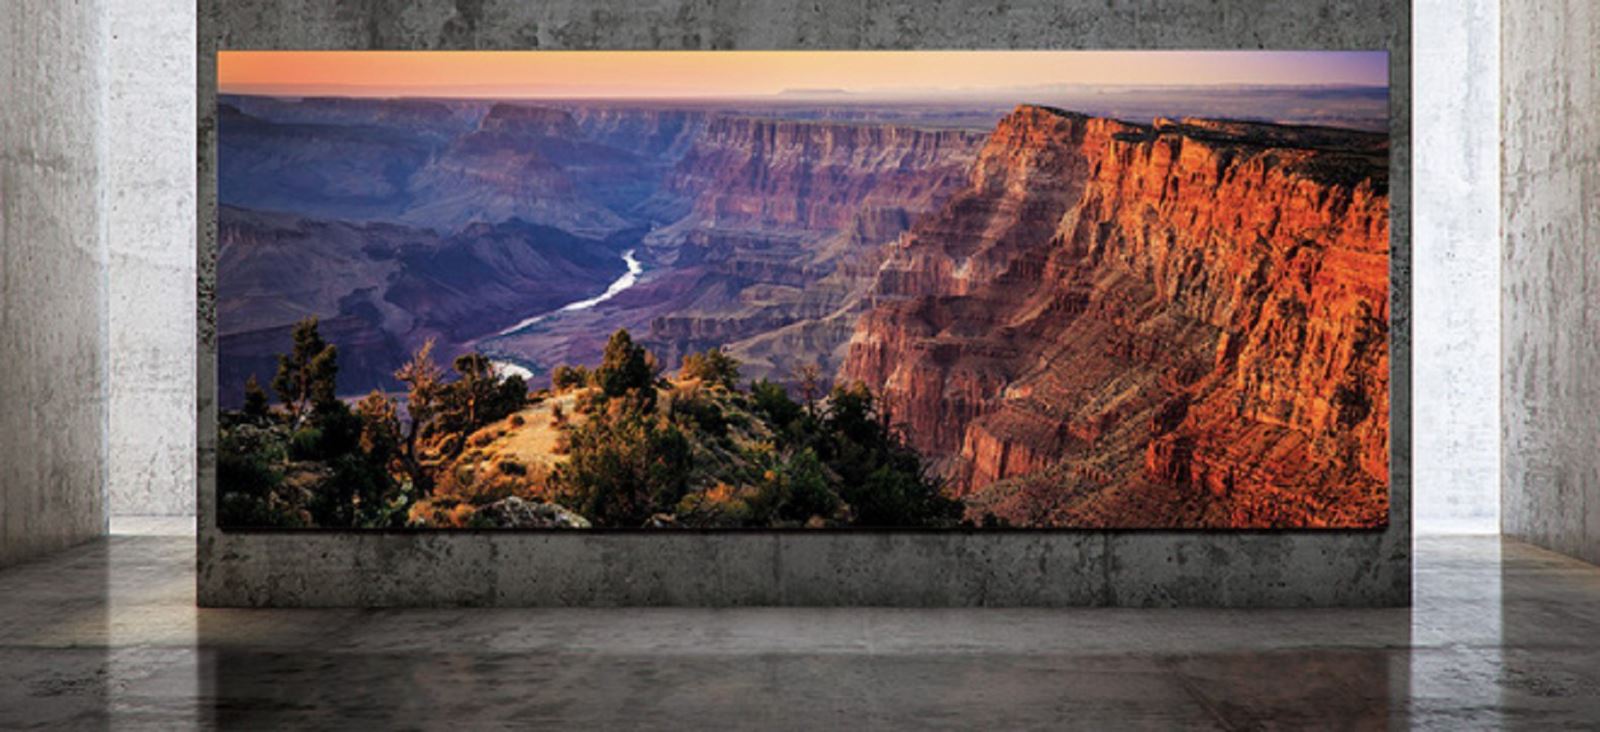 Samsung ra mắt TV The Wall Luxury với kích thước 292 inch, độ phân giải 8K